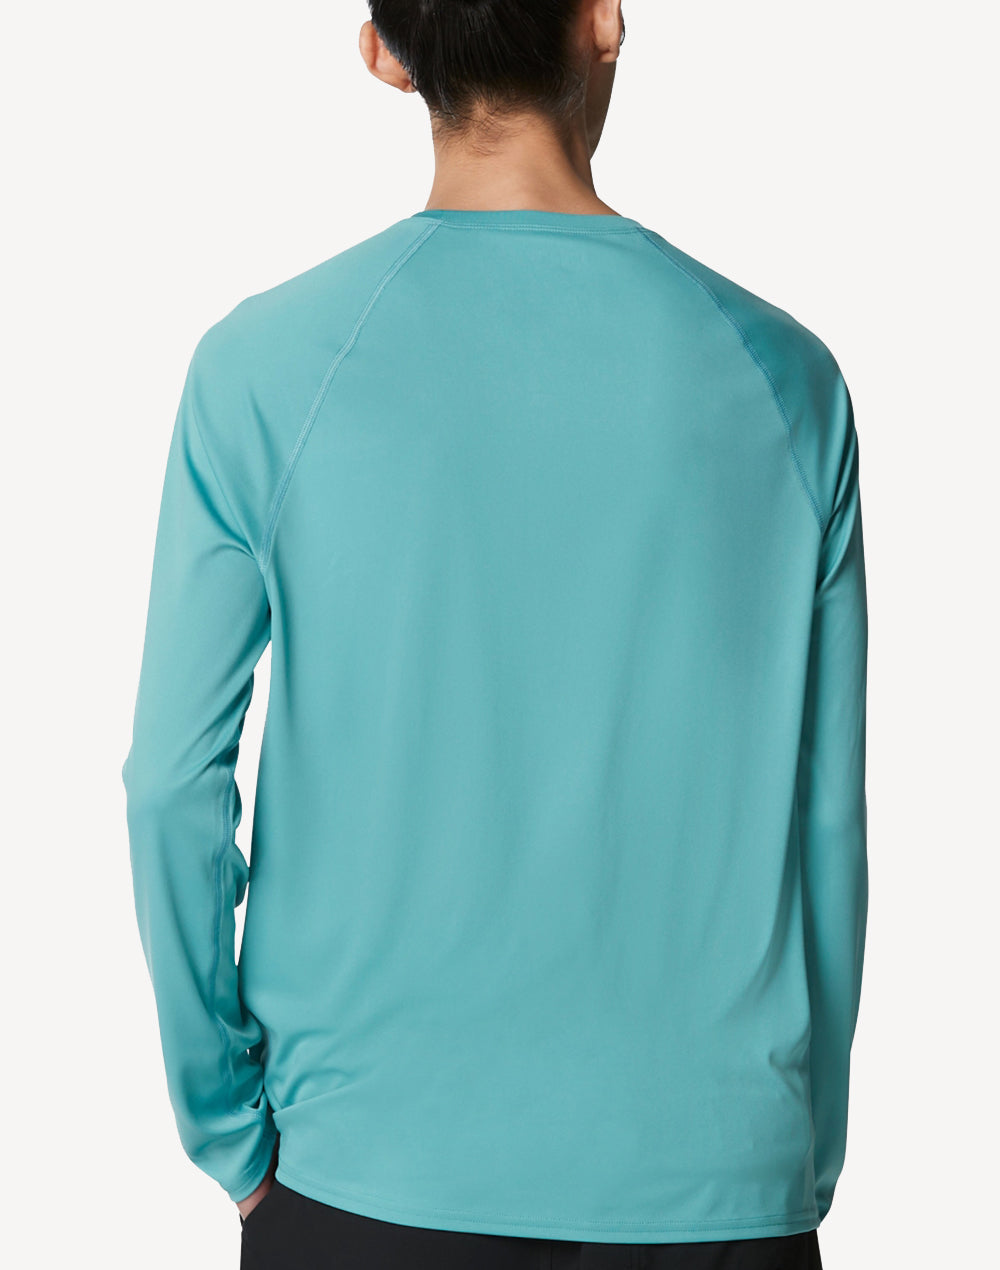 Men's Easy UPF 50 Long Sleeve Swim Shirt#color_porcelain-teal